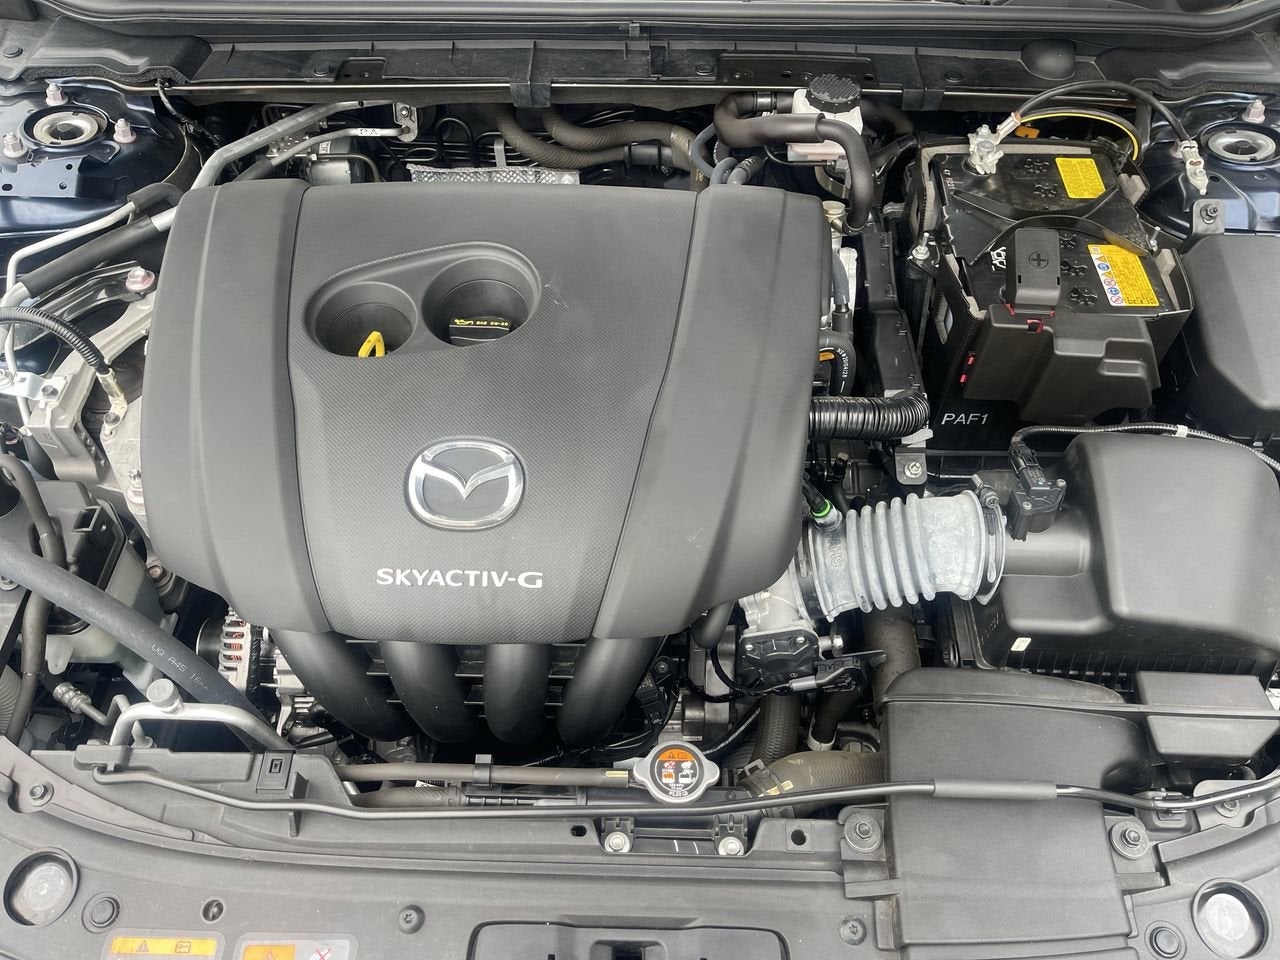 2021 Mazda Mazda3 Sedan 2.5 S